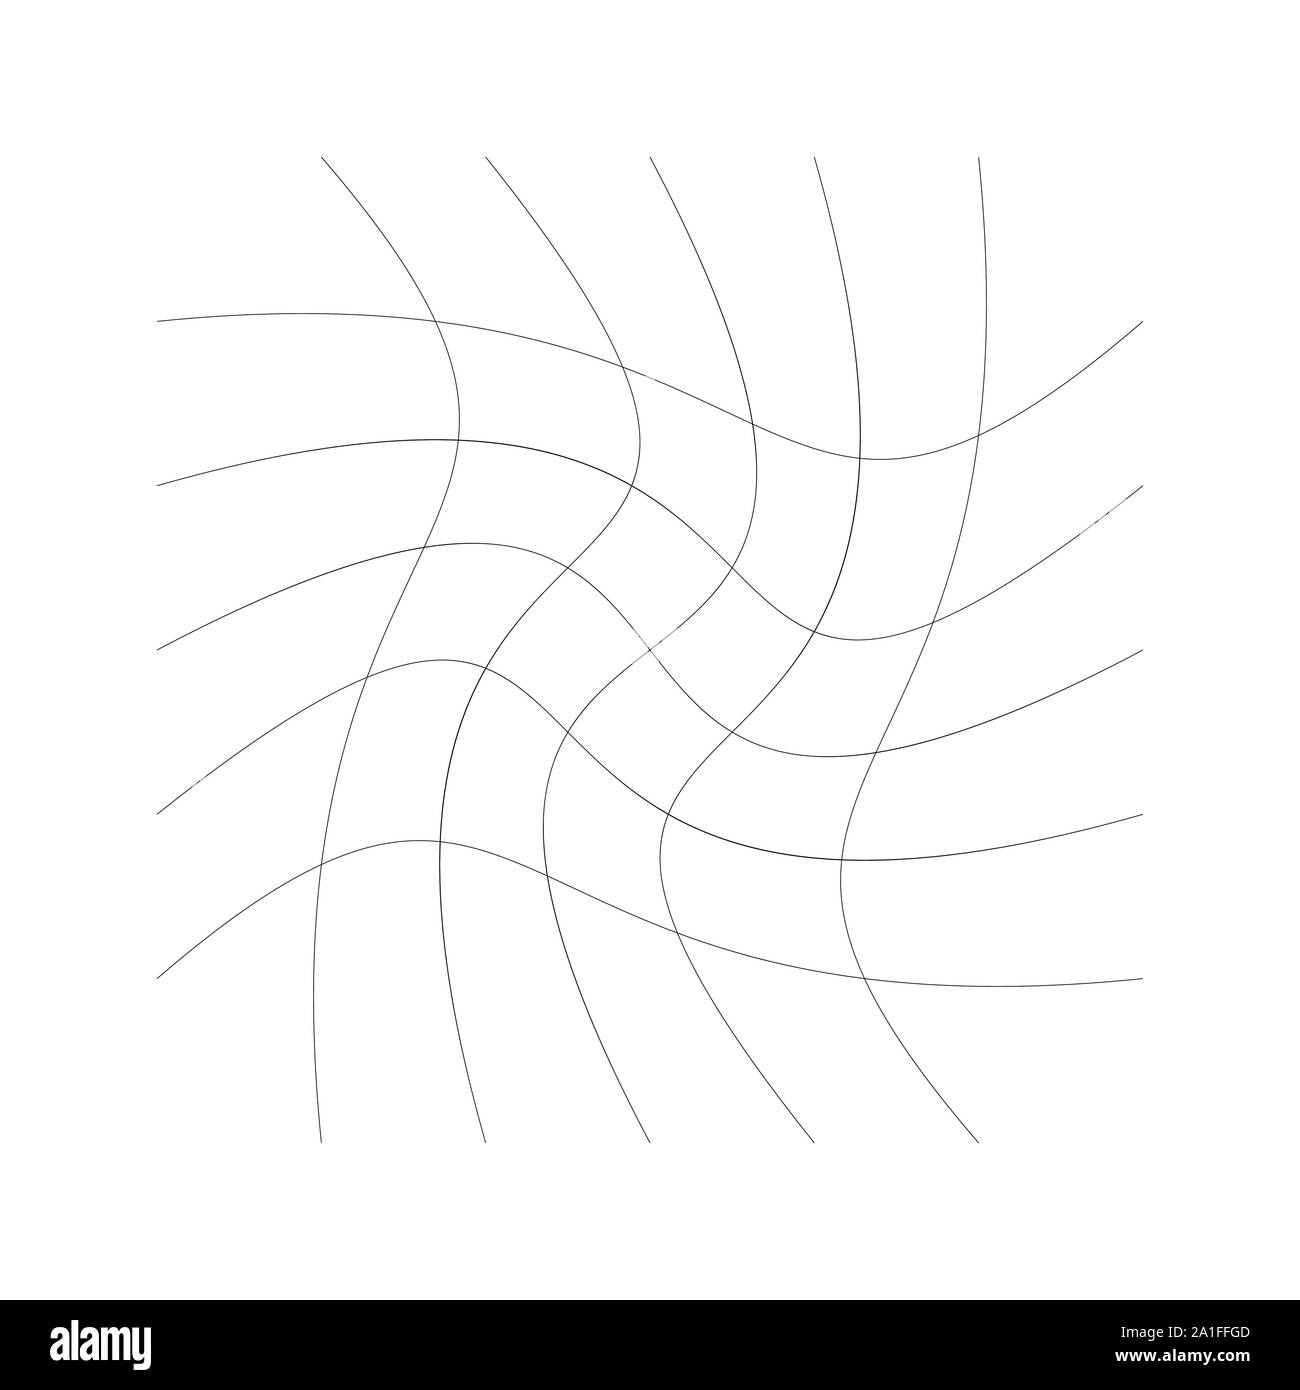 Griglia, mesh di linee con spirale circolare, twist, roll effetto. Whorl, whirl, idromassaggio modello di linee perpendicolari. Motivo a scacchi con rotazione Illustrazione Vettoriale